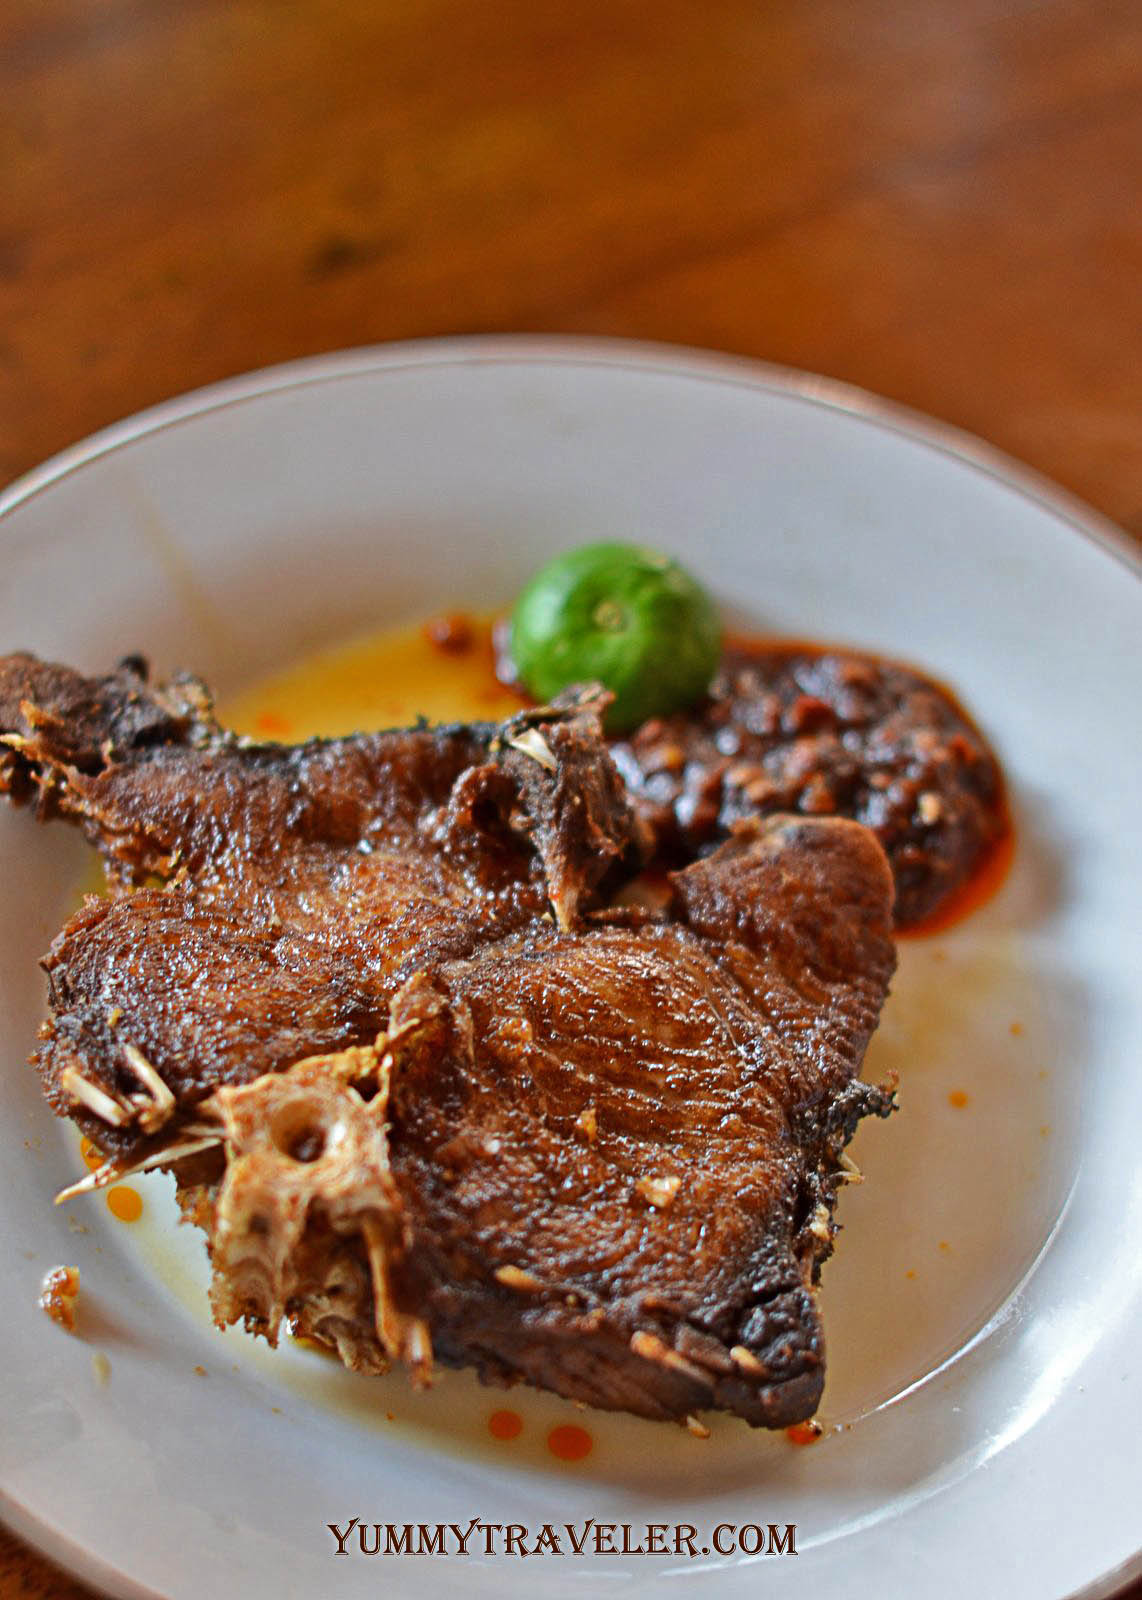 The Yummy Traveler Food Rest Review Warung Mak Beng